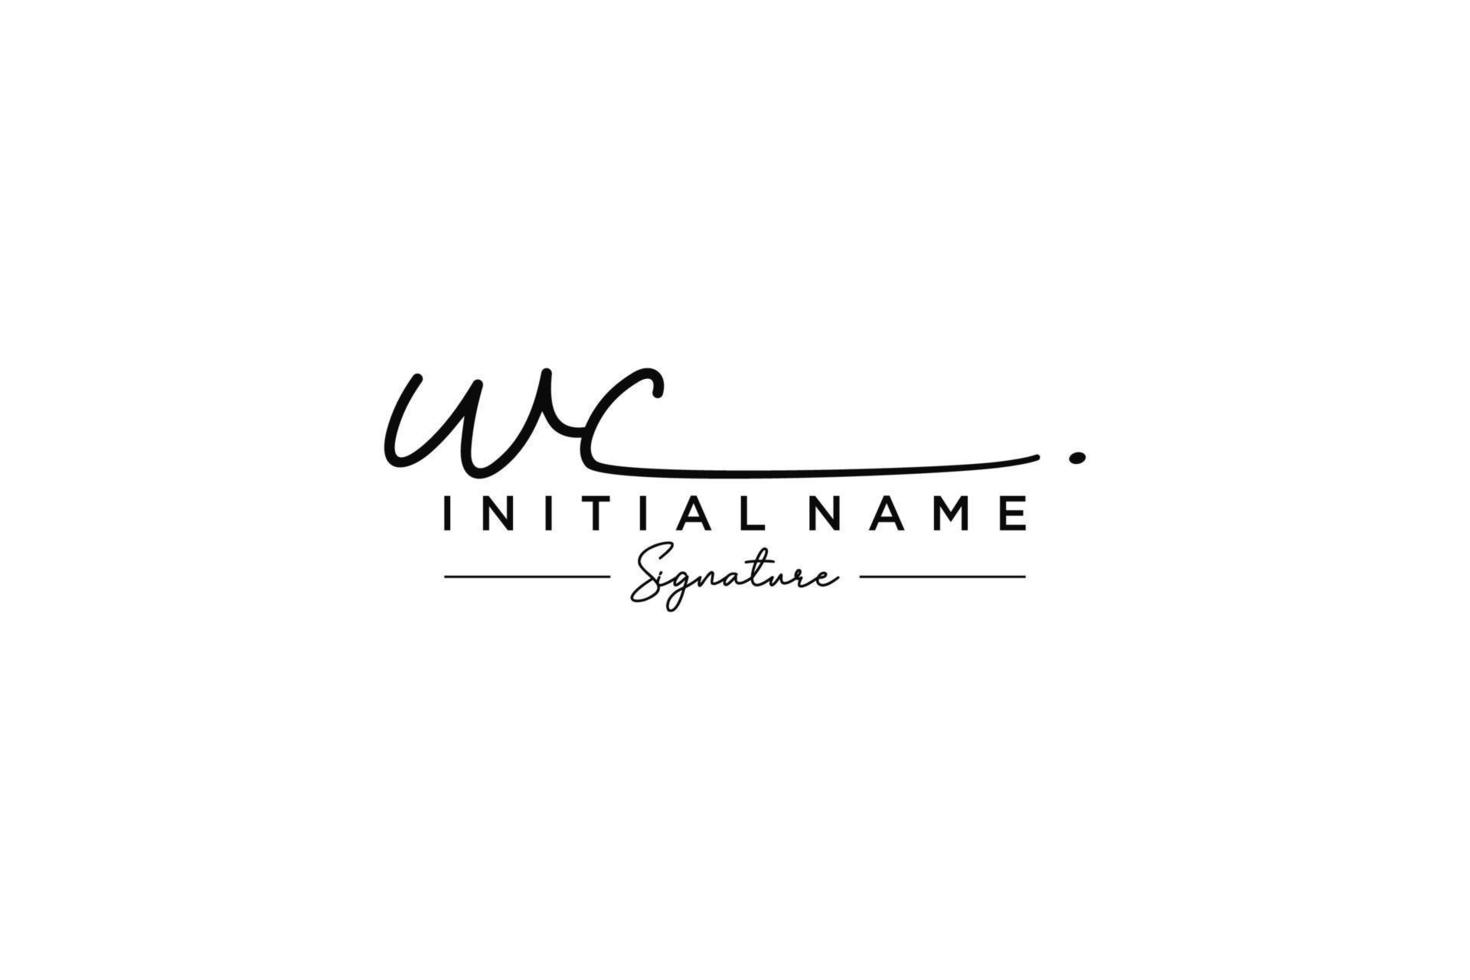 vetor inicial de modelo de logotipo de assinatura wc. ilustração vetorial de letras de caligrafia desenhada à mão.